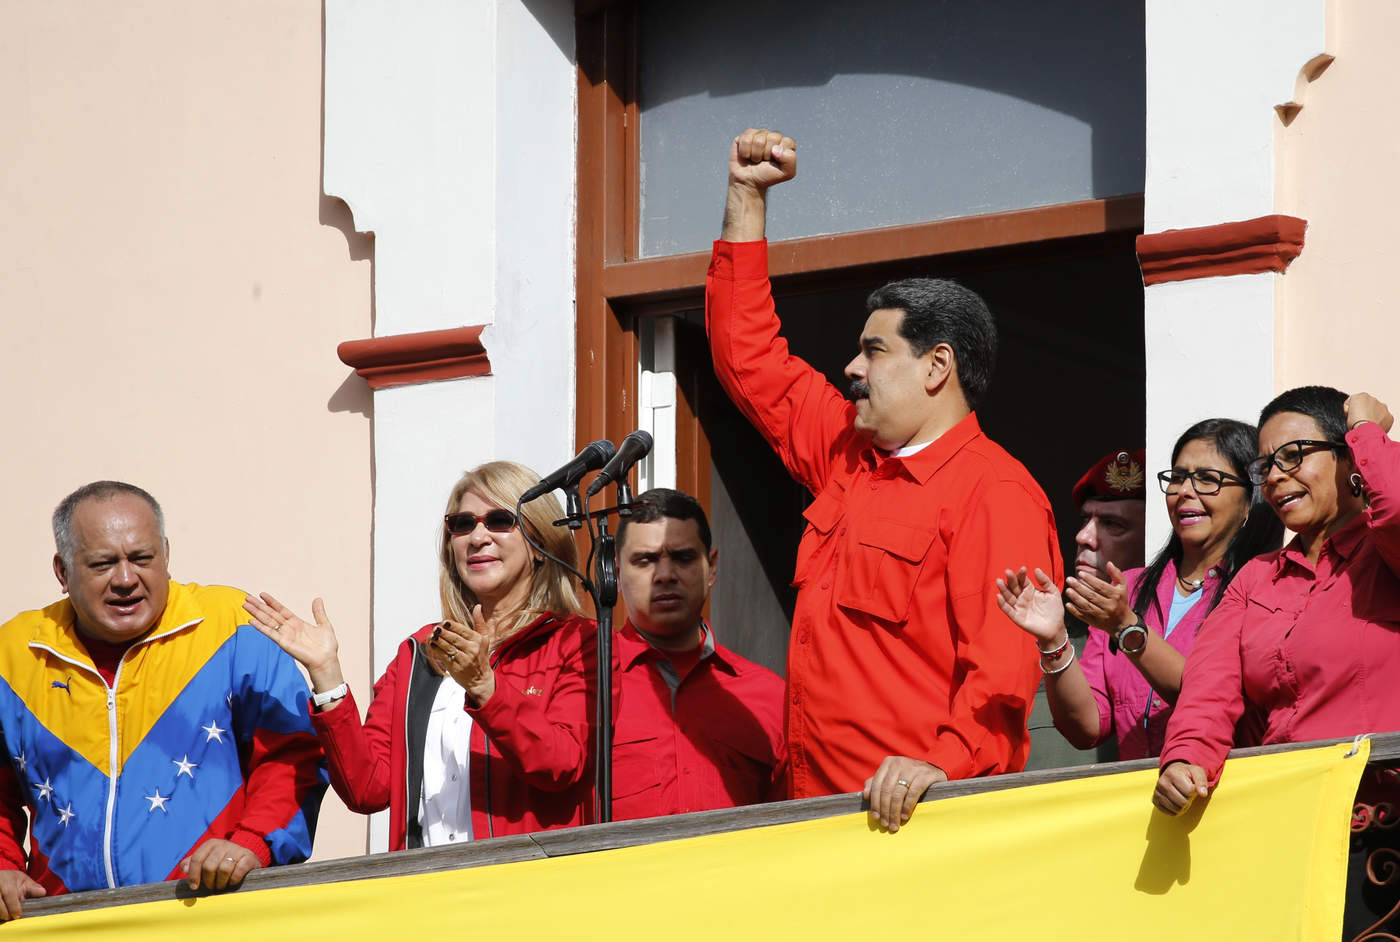 '¿Puede autojuramentarse un cualquiera como presidente? ¿O es el pueblo venezolano quien elige a su presidente?', preguntó a sus seguidores el mandatario. (AP)